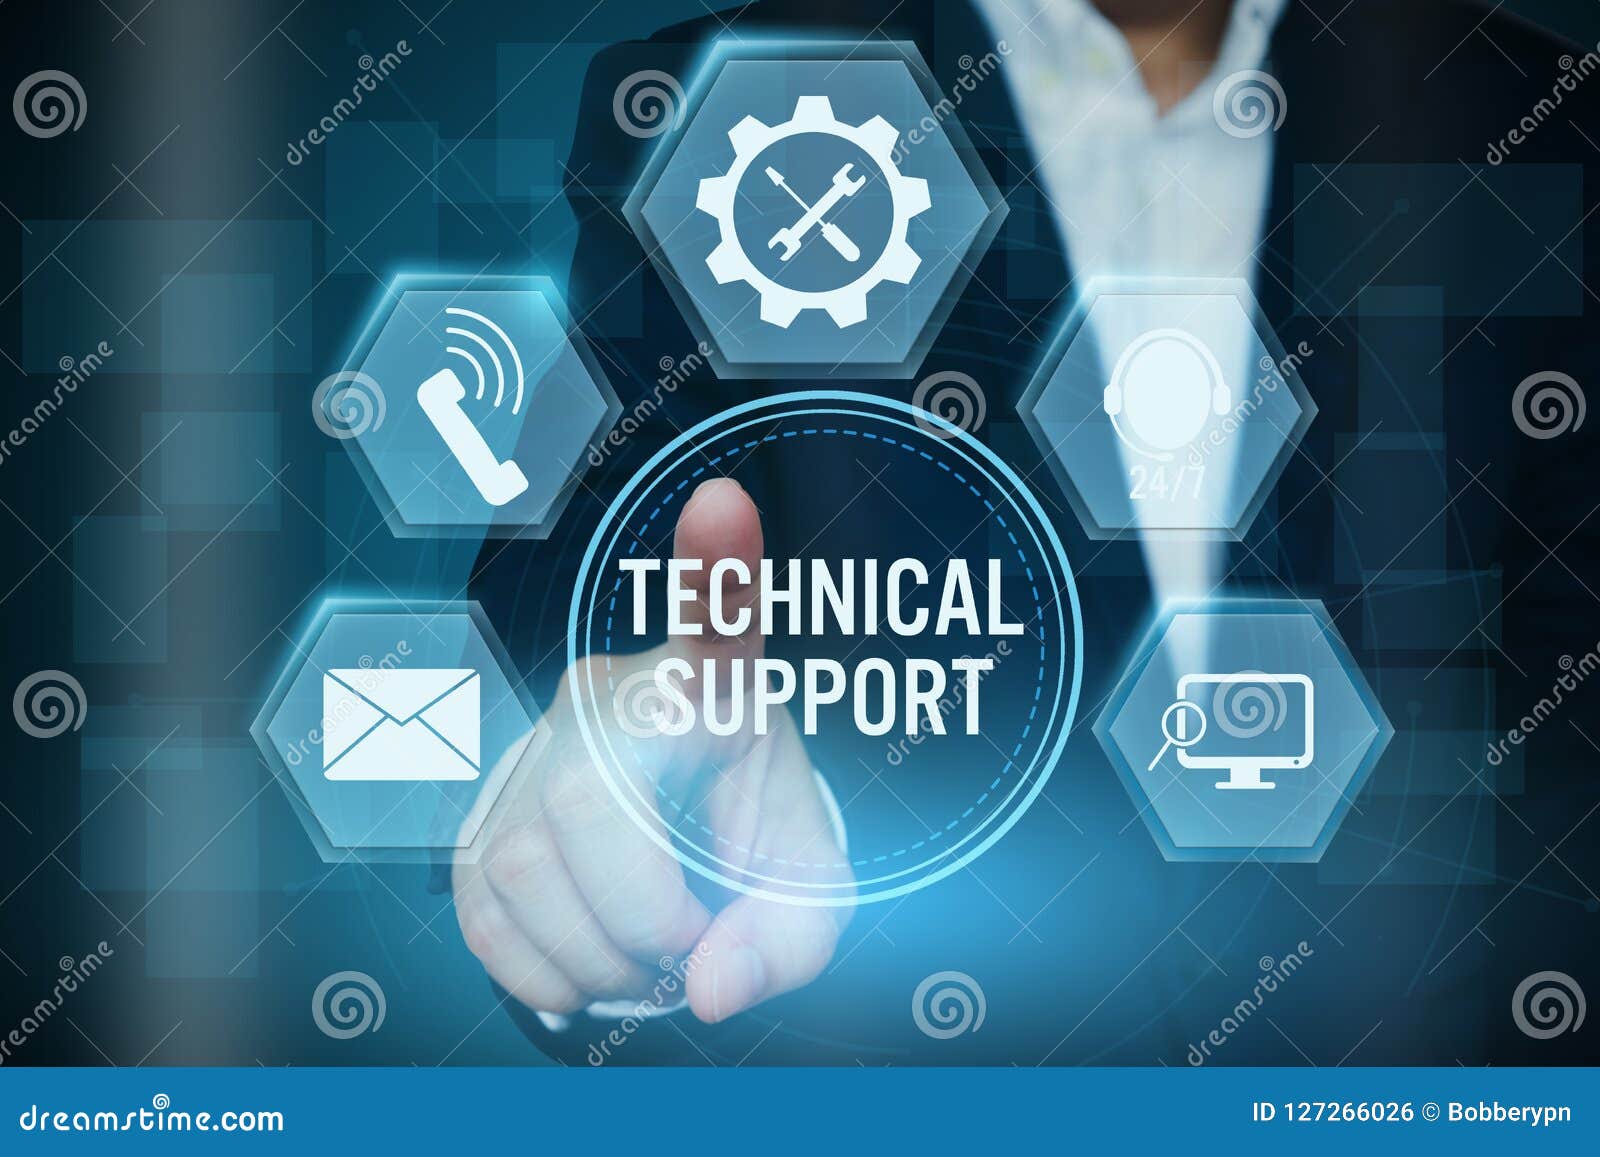 Supporting service com. Техническая поддержка. Техническая поддержка иллюстрация. Техническая поддержка картинка. Technical support.